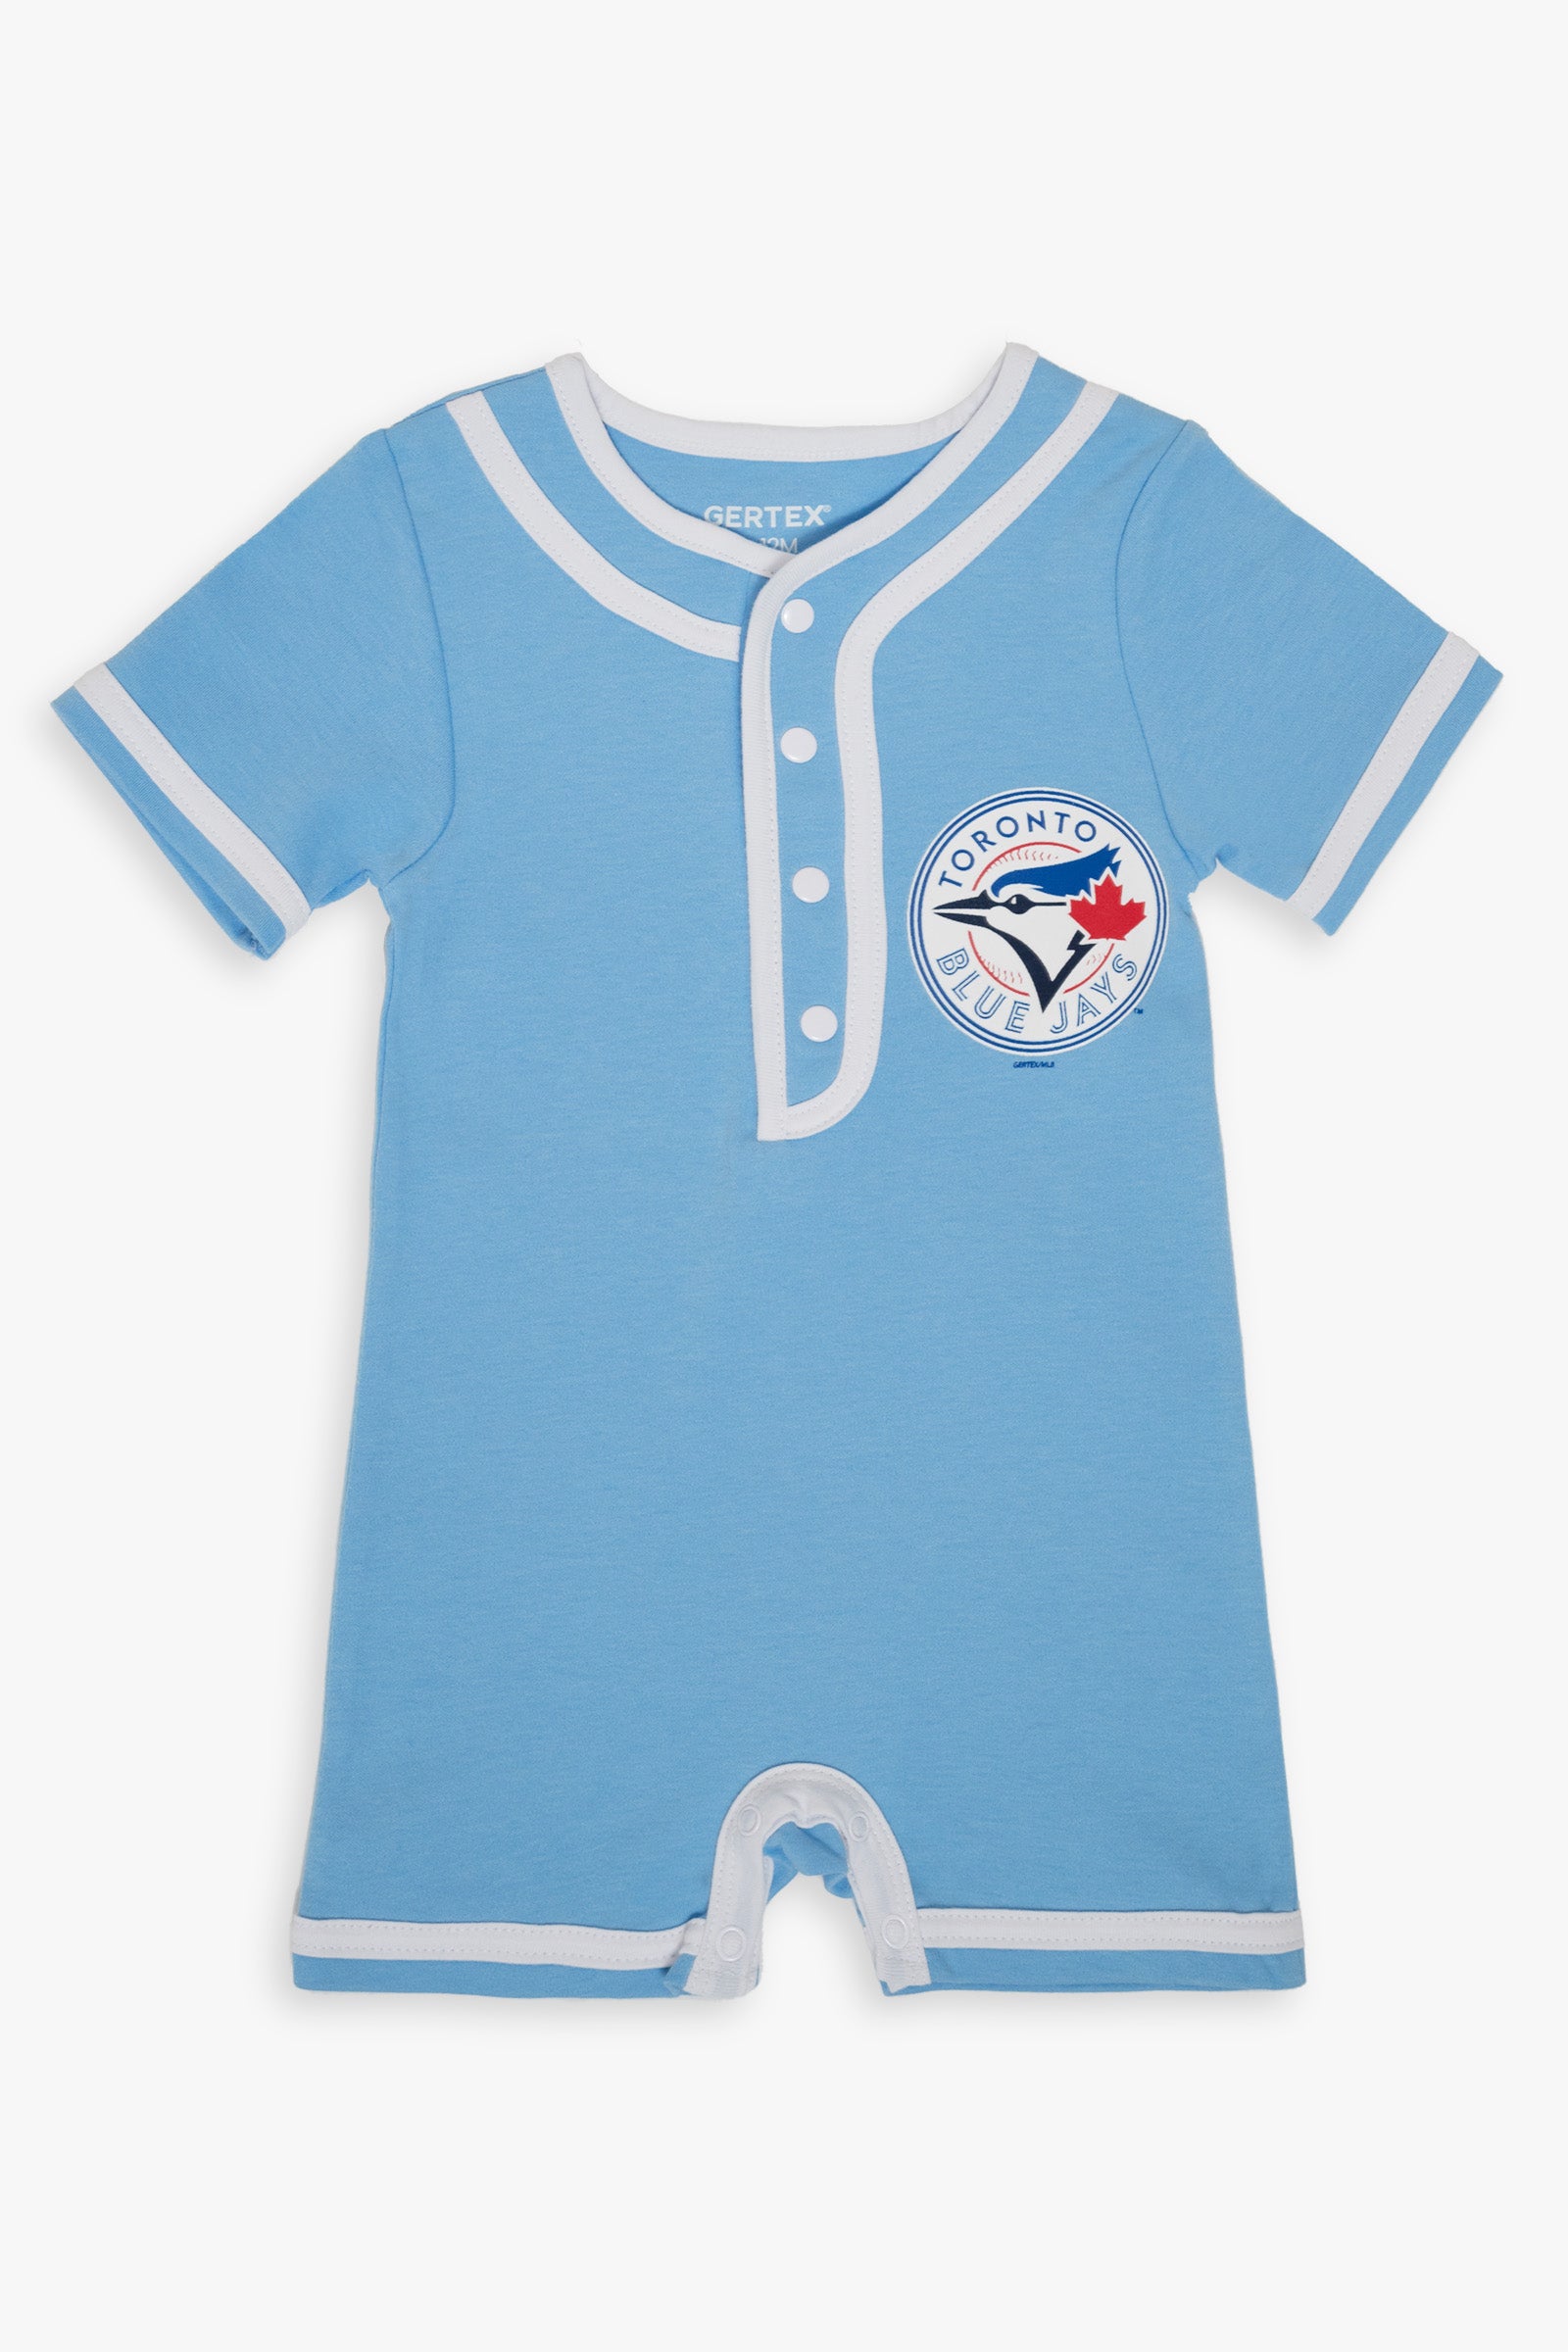 MLB Toronto Blue Jays Baby Romper